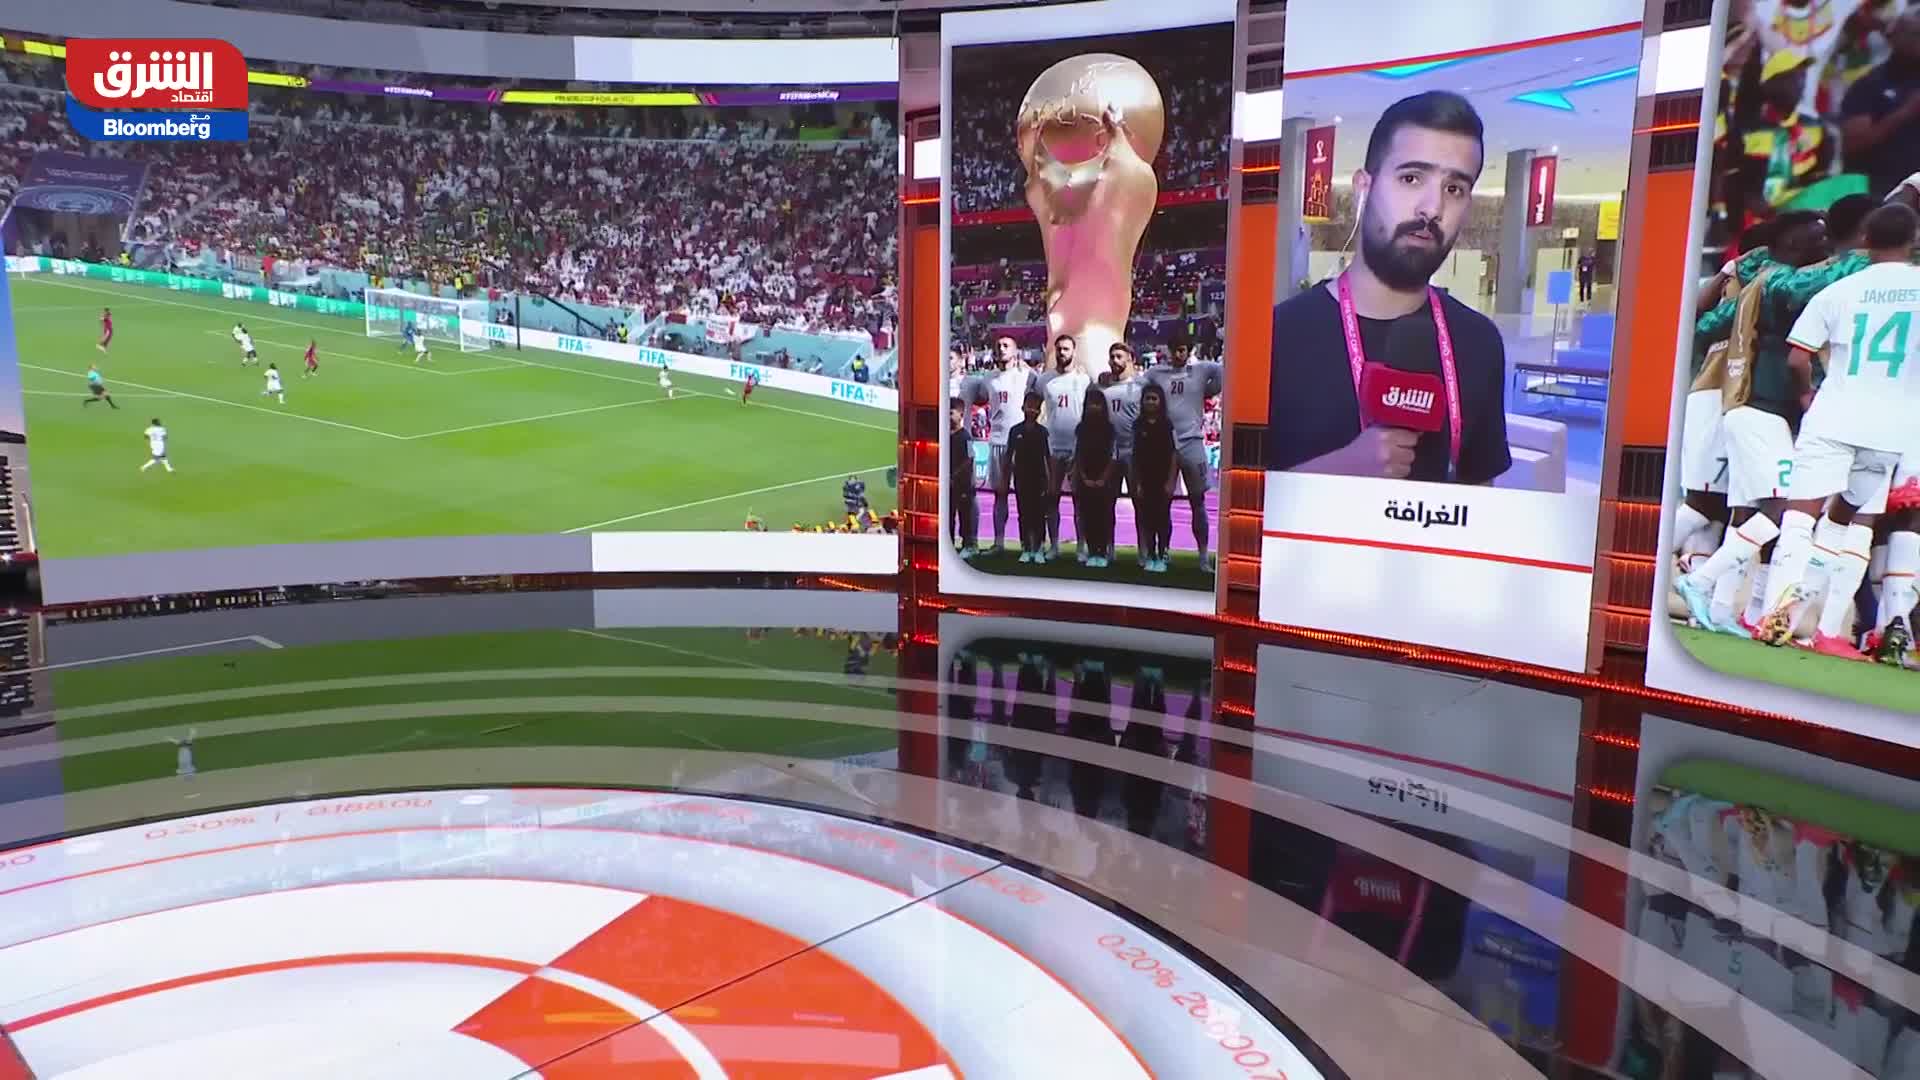 موفد الشرق: منتخب قطر لم يظهر بالأداء المطلوب كمستضيف لبطولة كأس العالم